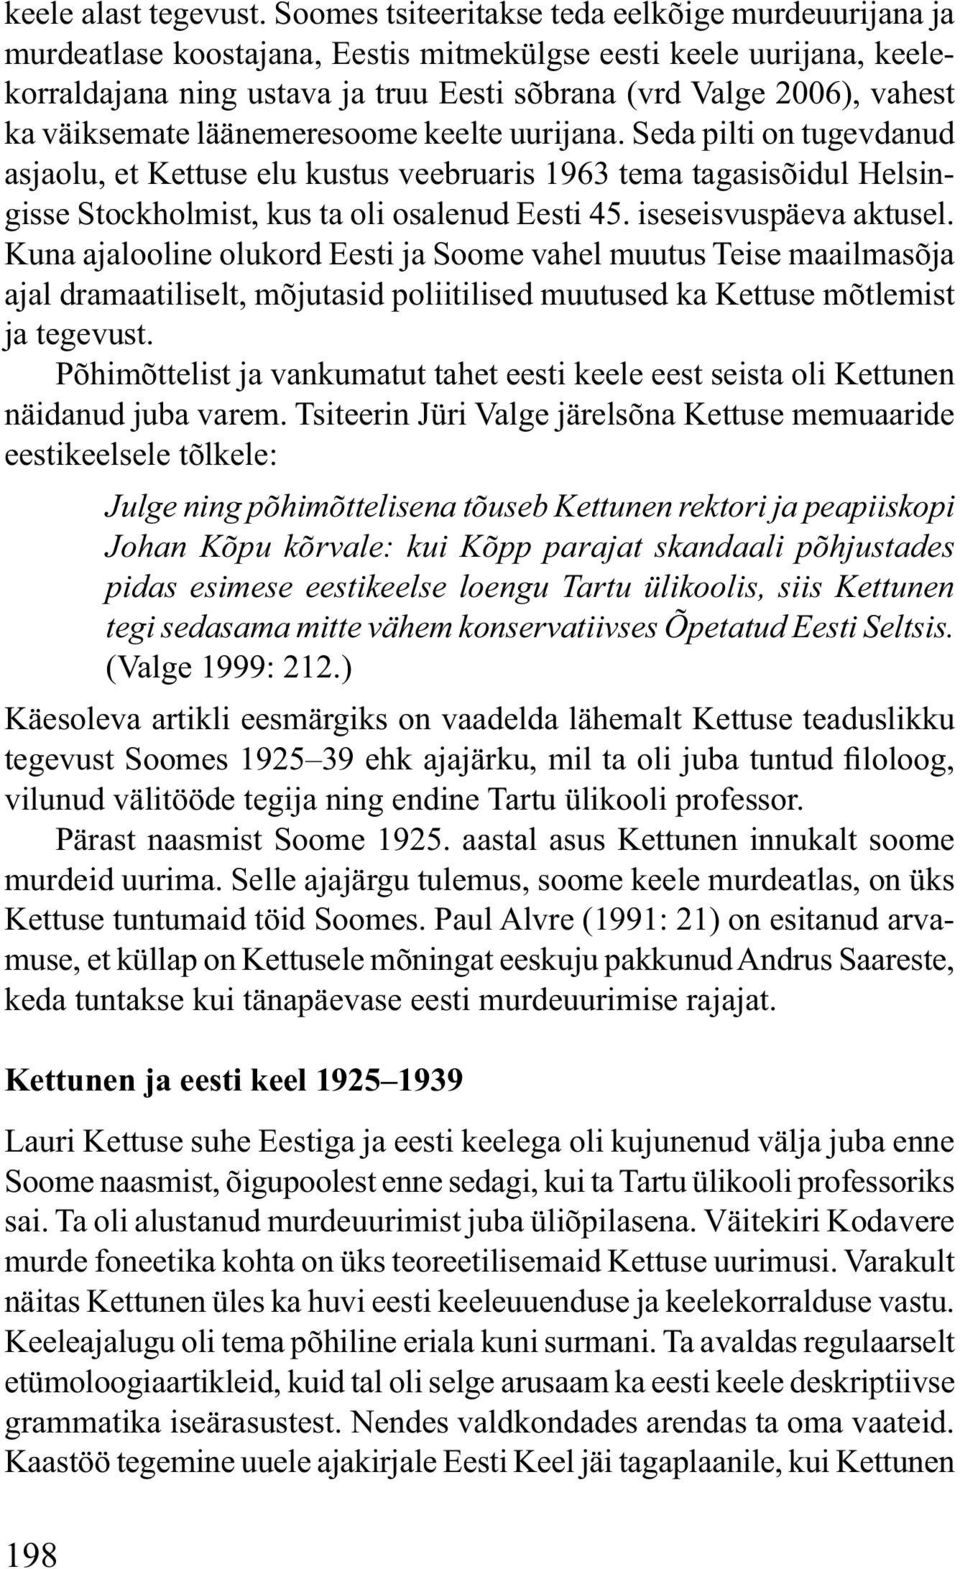 väiksemate läänemeresoome keelte uurijana. Seda pilti on tugevdanud asjaolu, et Kettuse elu kustus veebruaris 1963 tema tagasisõidul Helsingisse Stockholmist, kus ta oli osalenud Eesti 45.